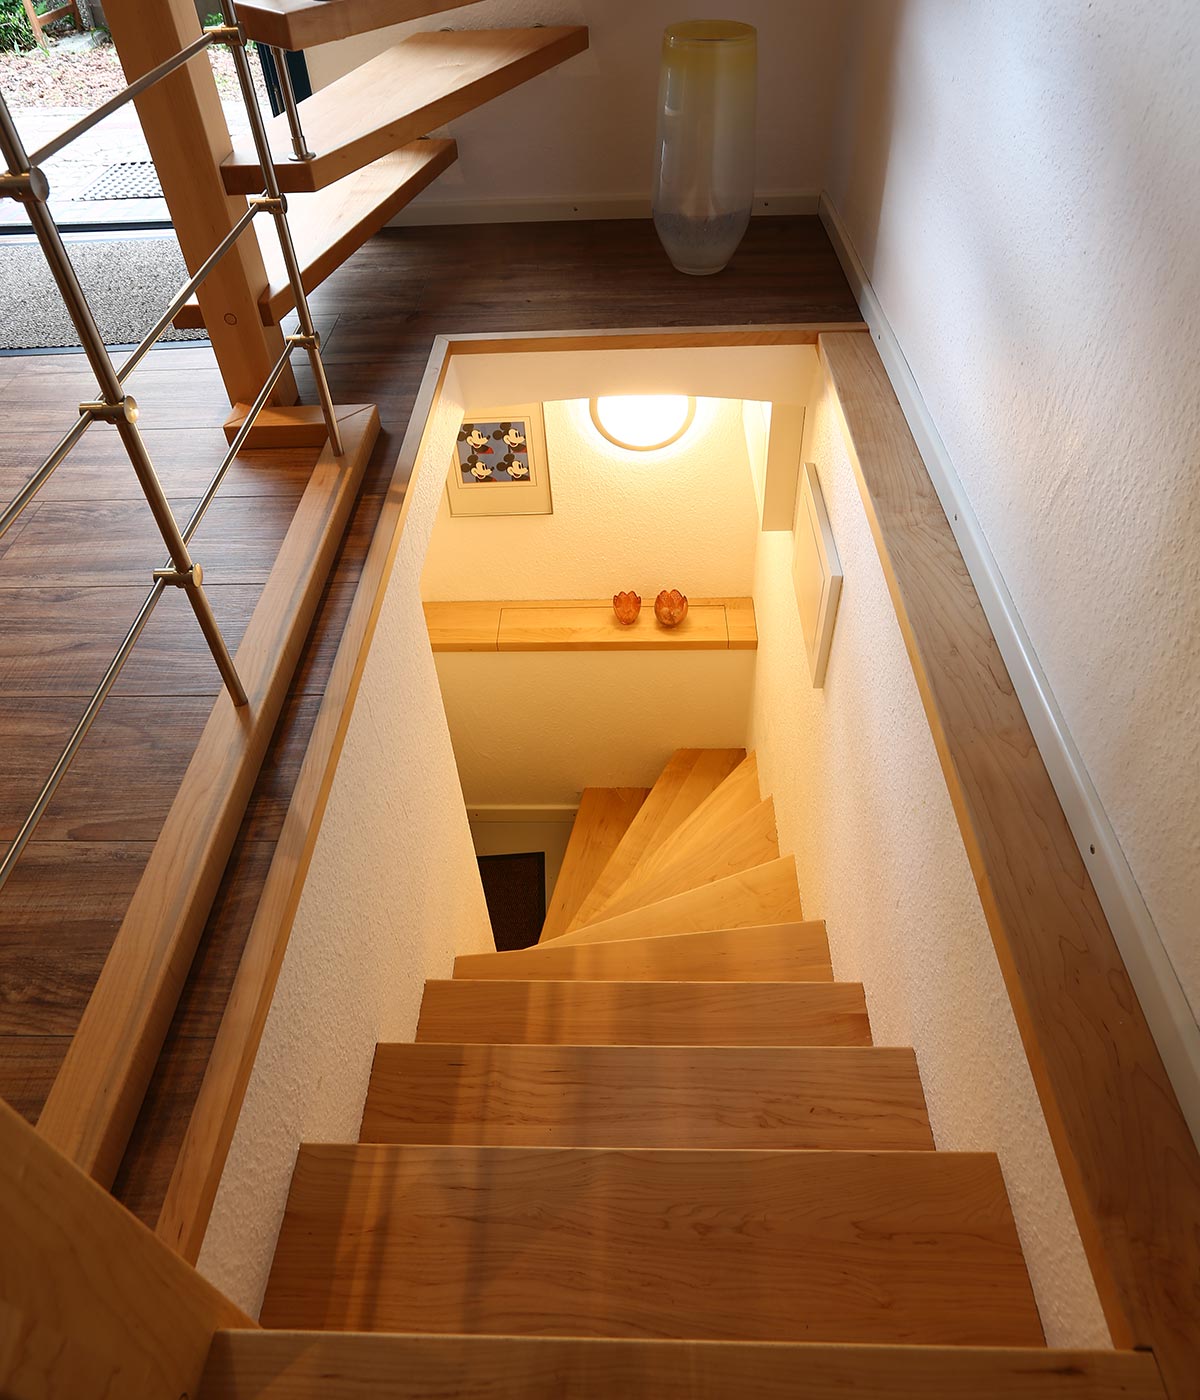 Handlauftragende Treppen | Carstens Tischlerei, Hude